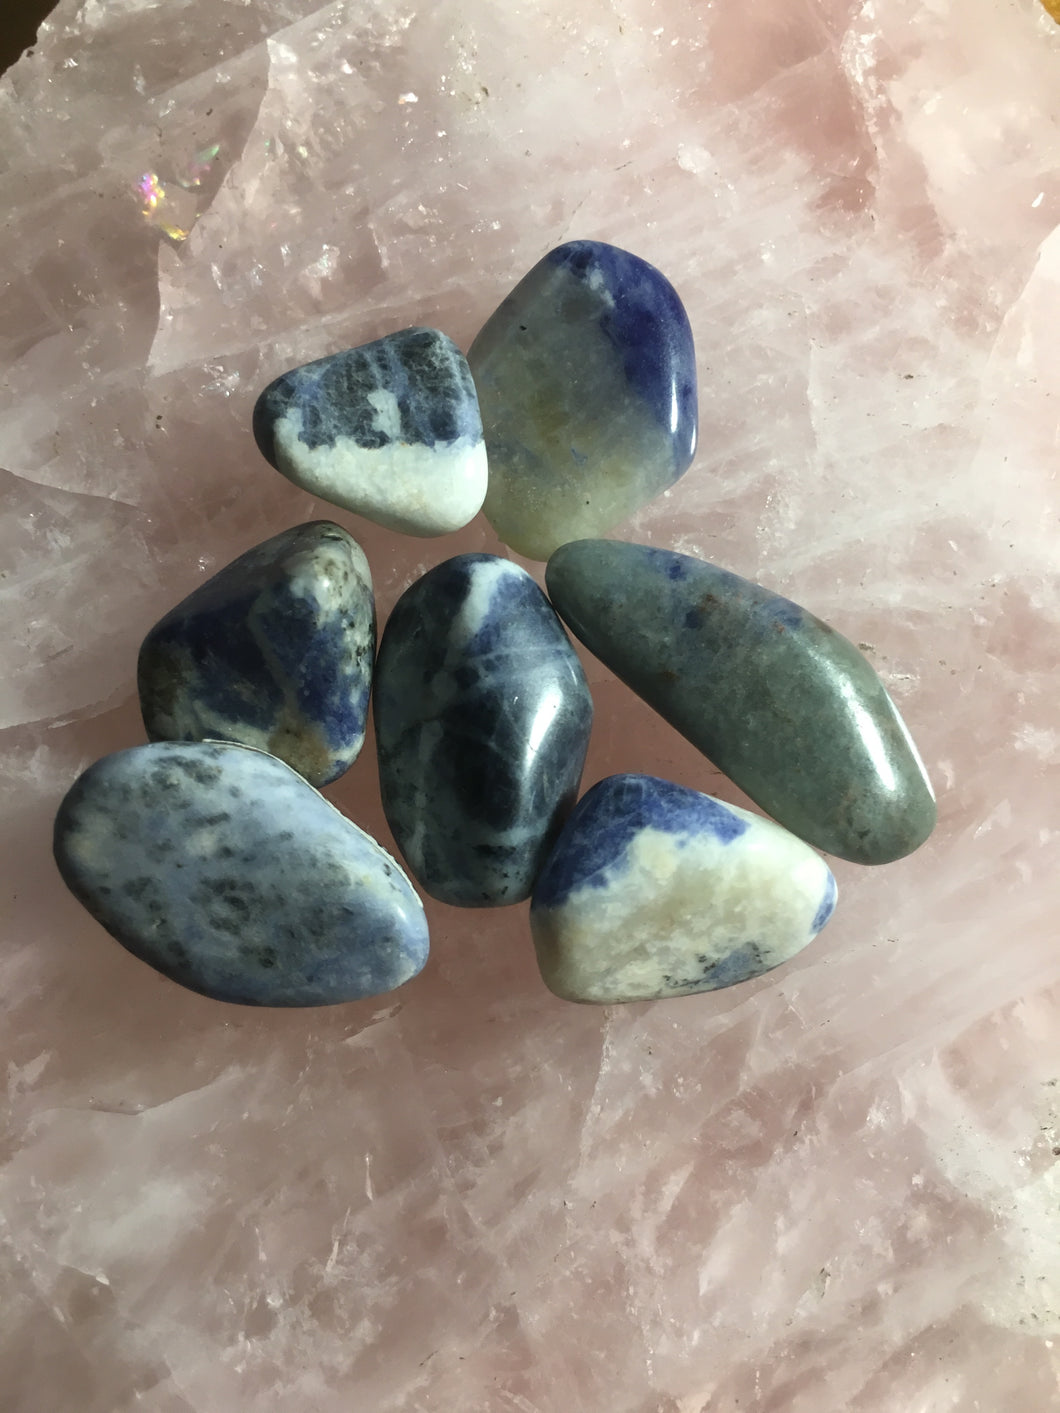 Sodalite Tumbled Healing Stone